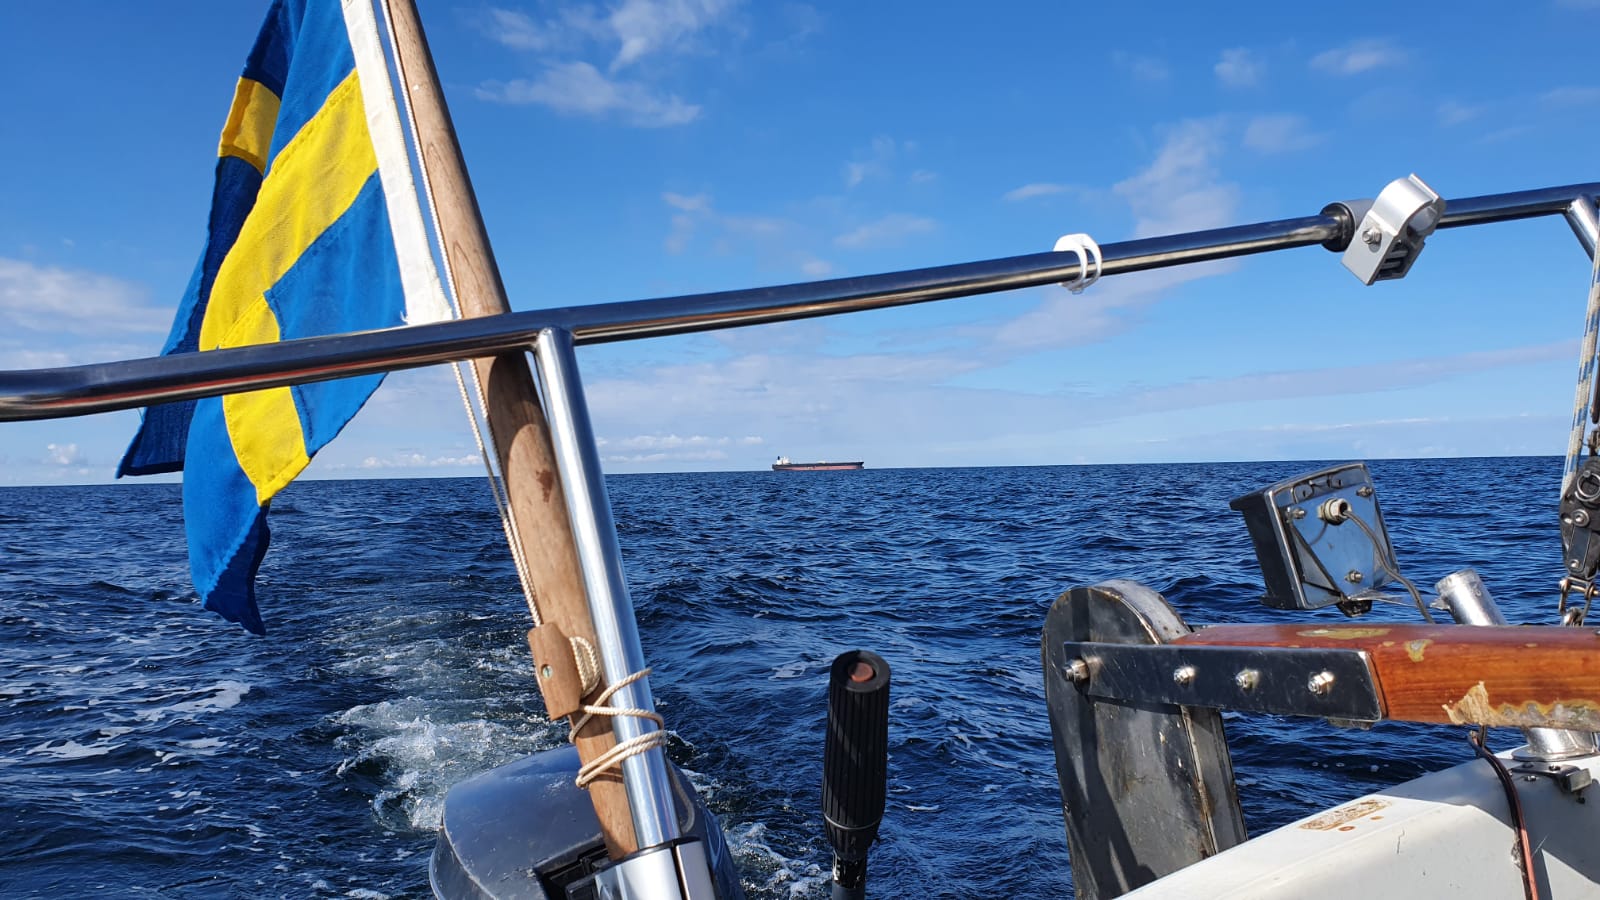 Vykstame jachta Gotlande – Ventspilyje